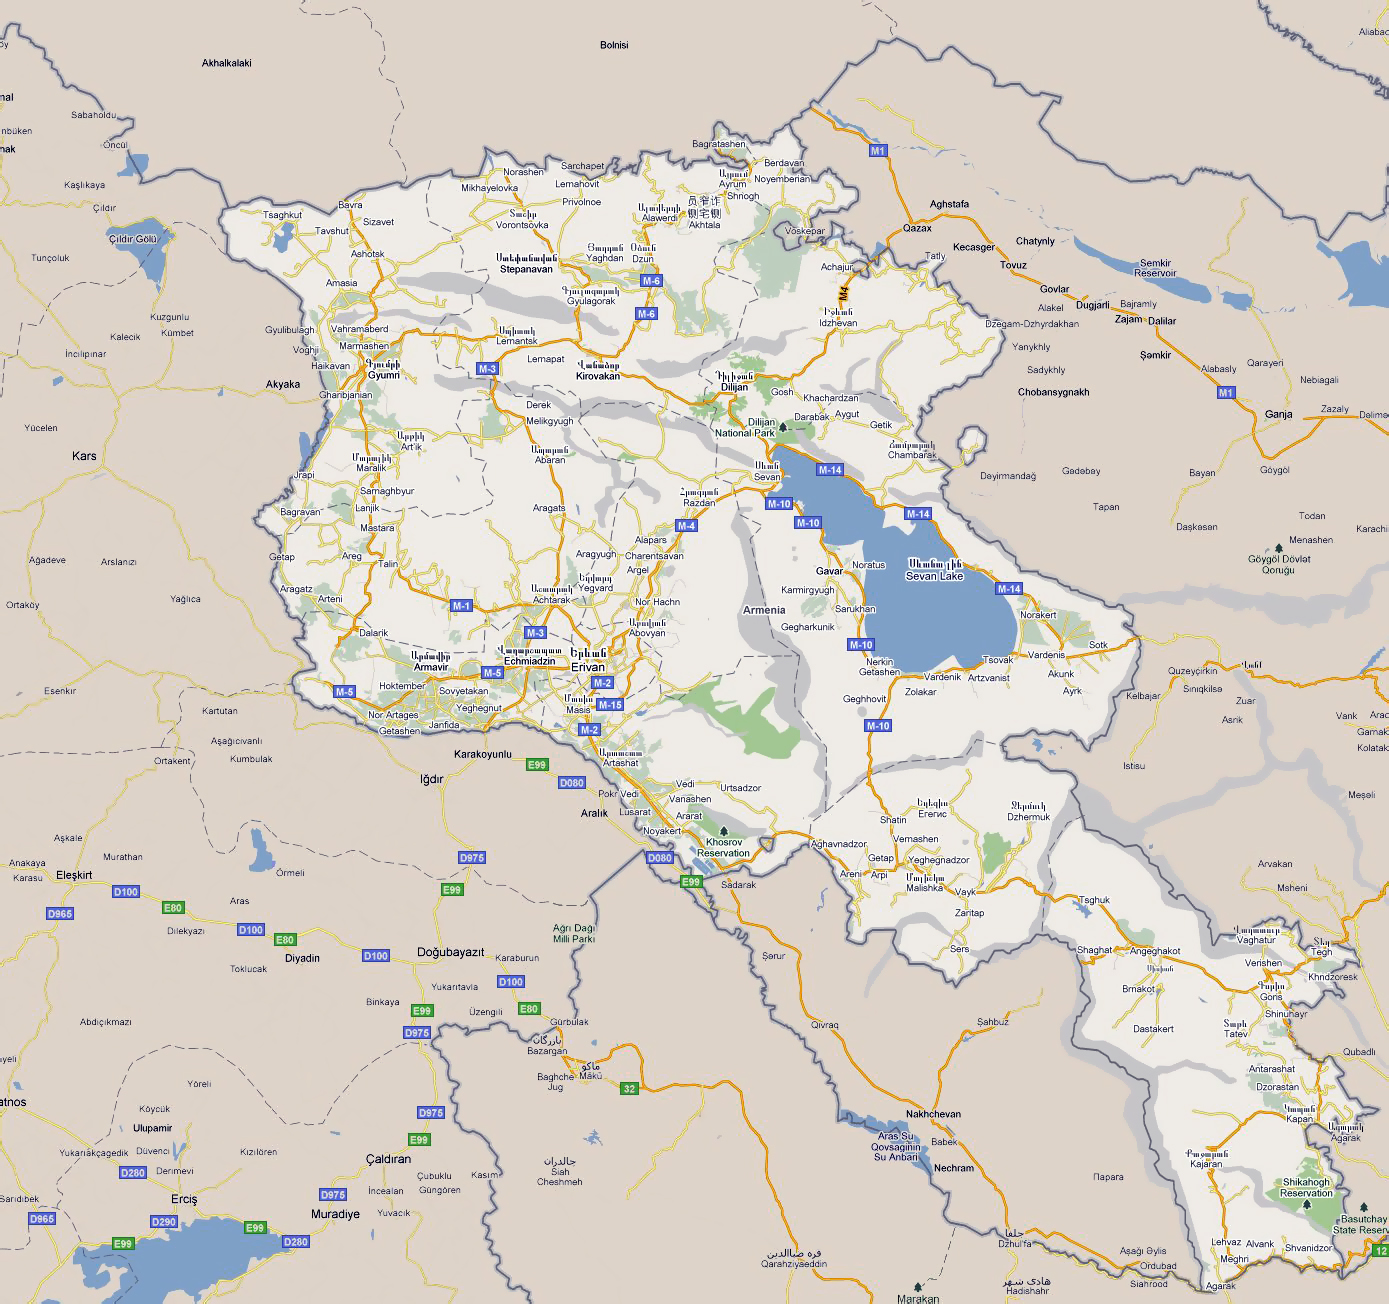 Armenia Map (Road) - Worldometer